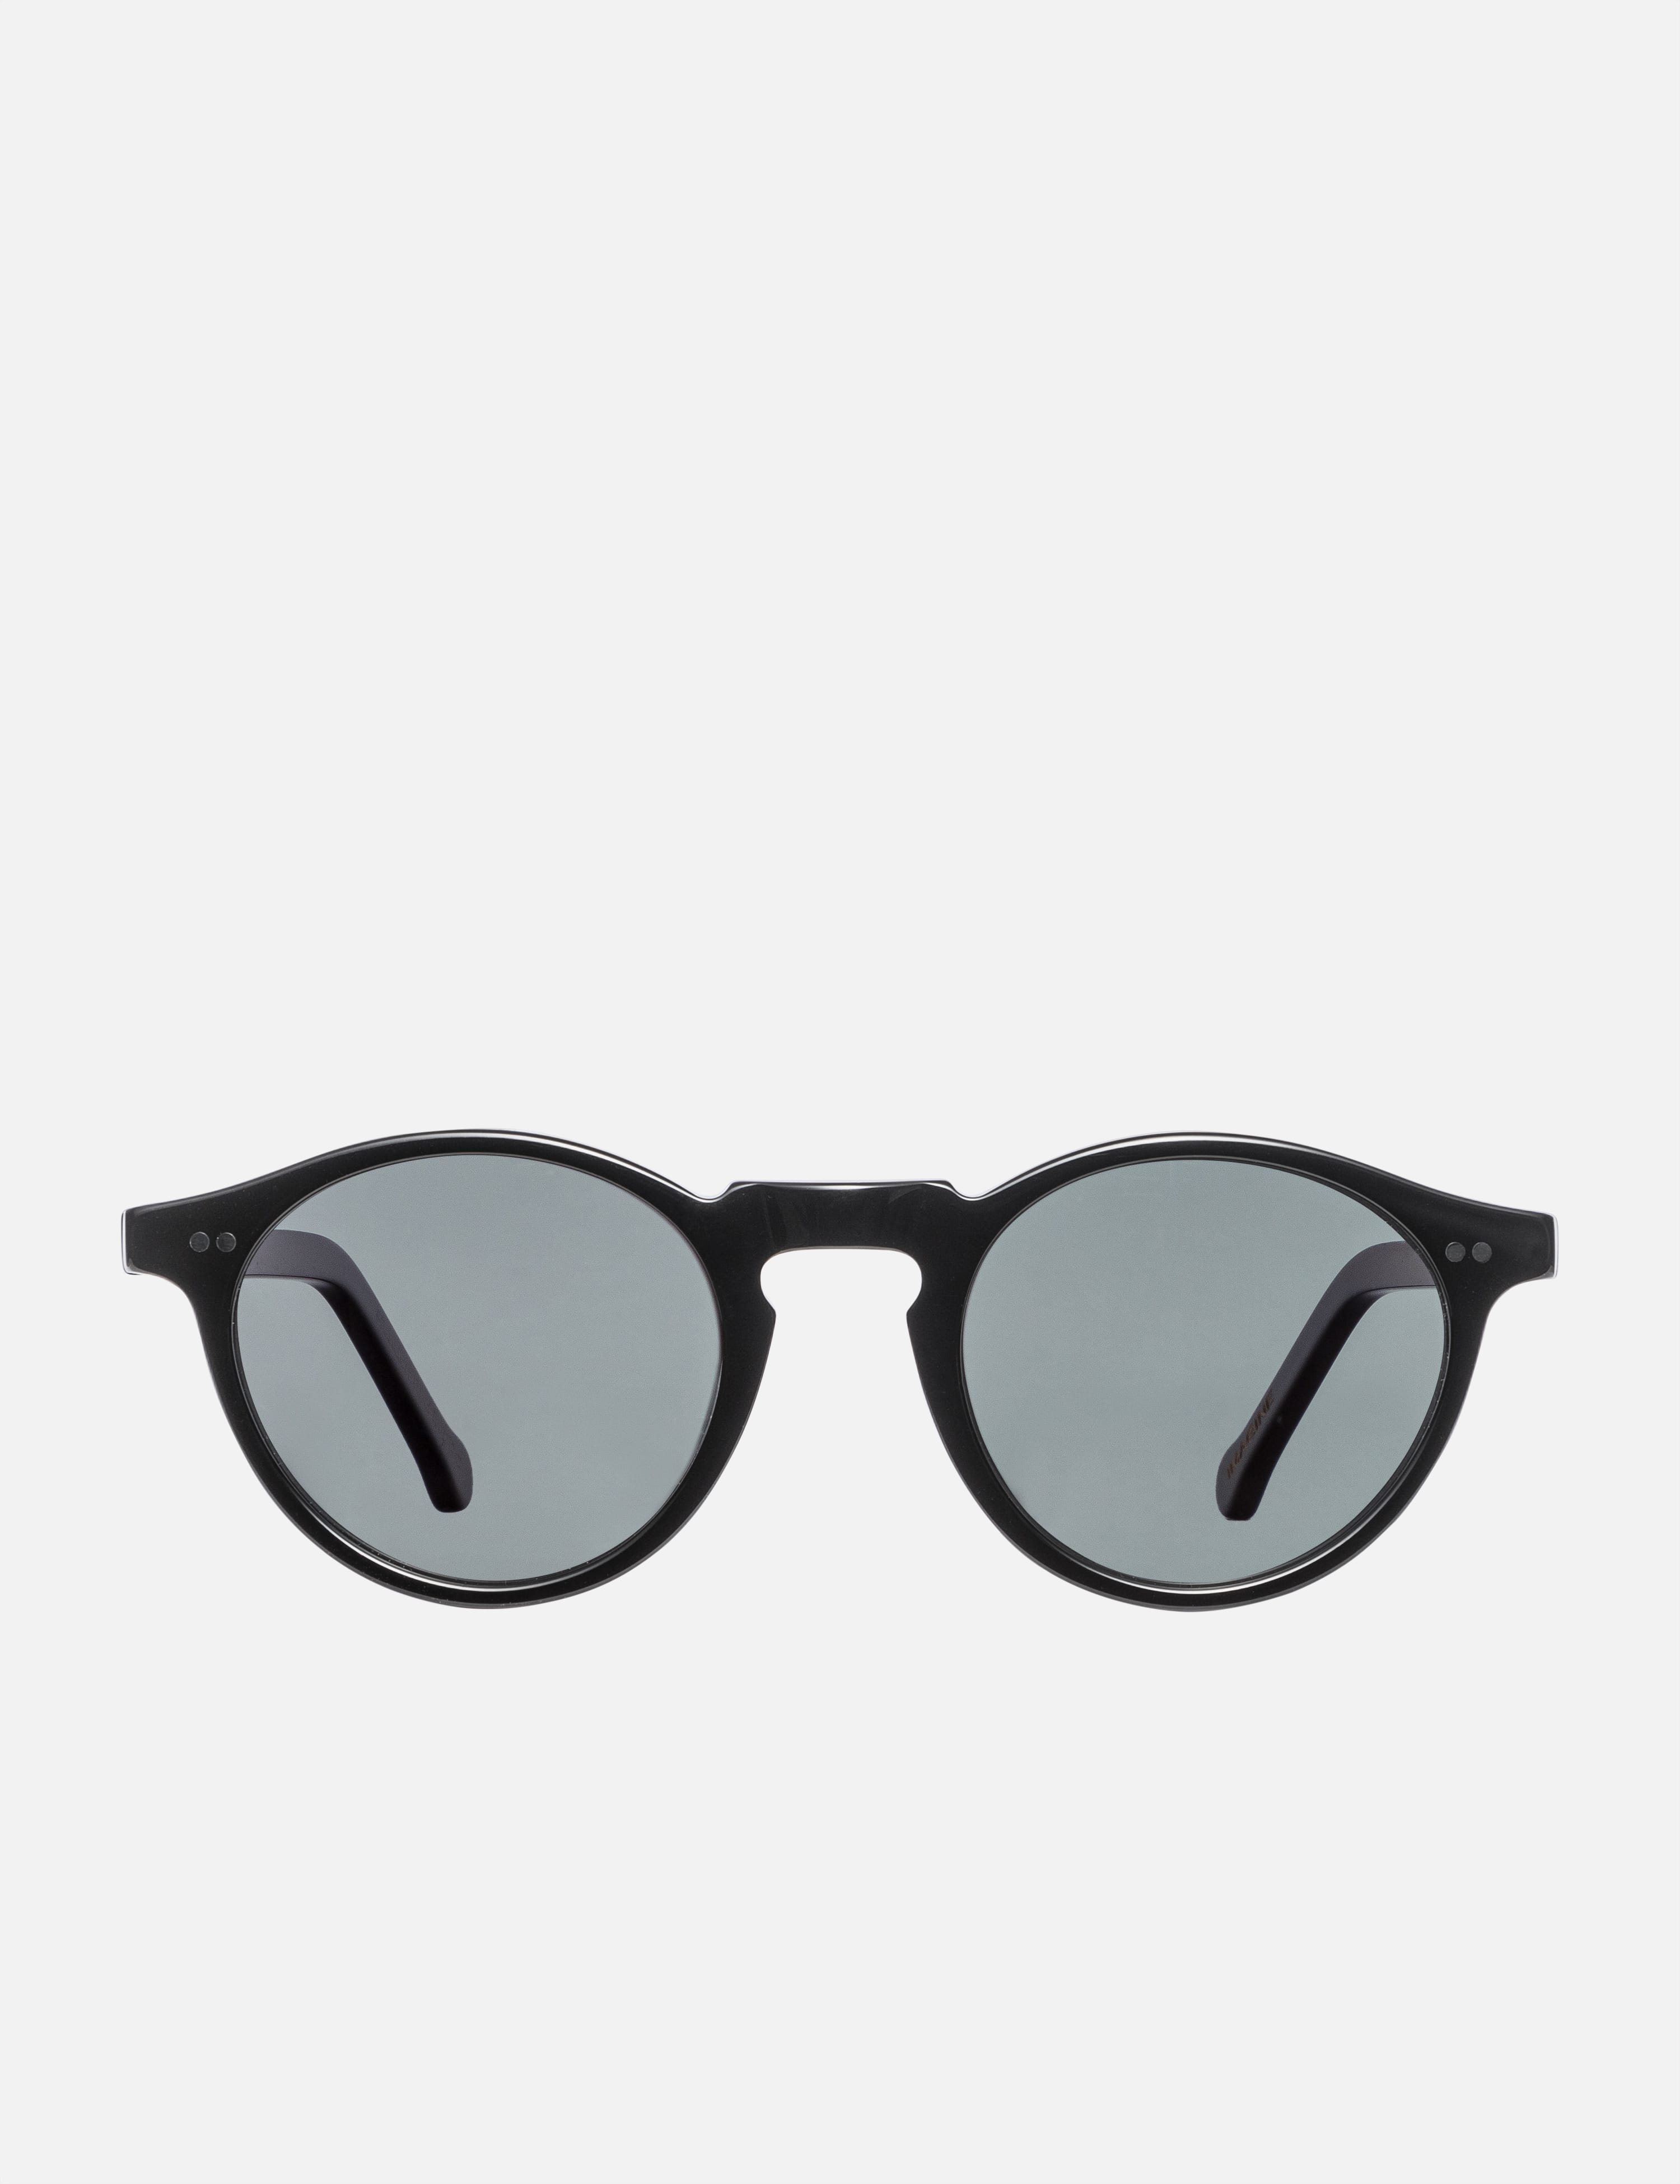 Kris Van Assche Sunglasses Dark Purple Brown and Grey – Watches & Crystals